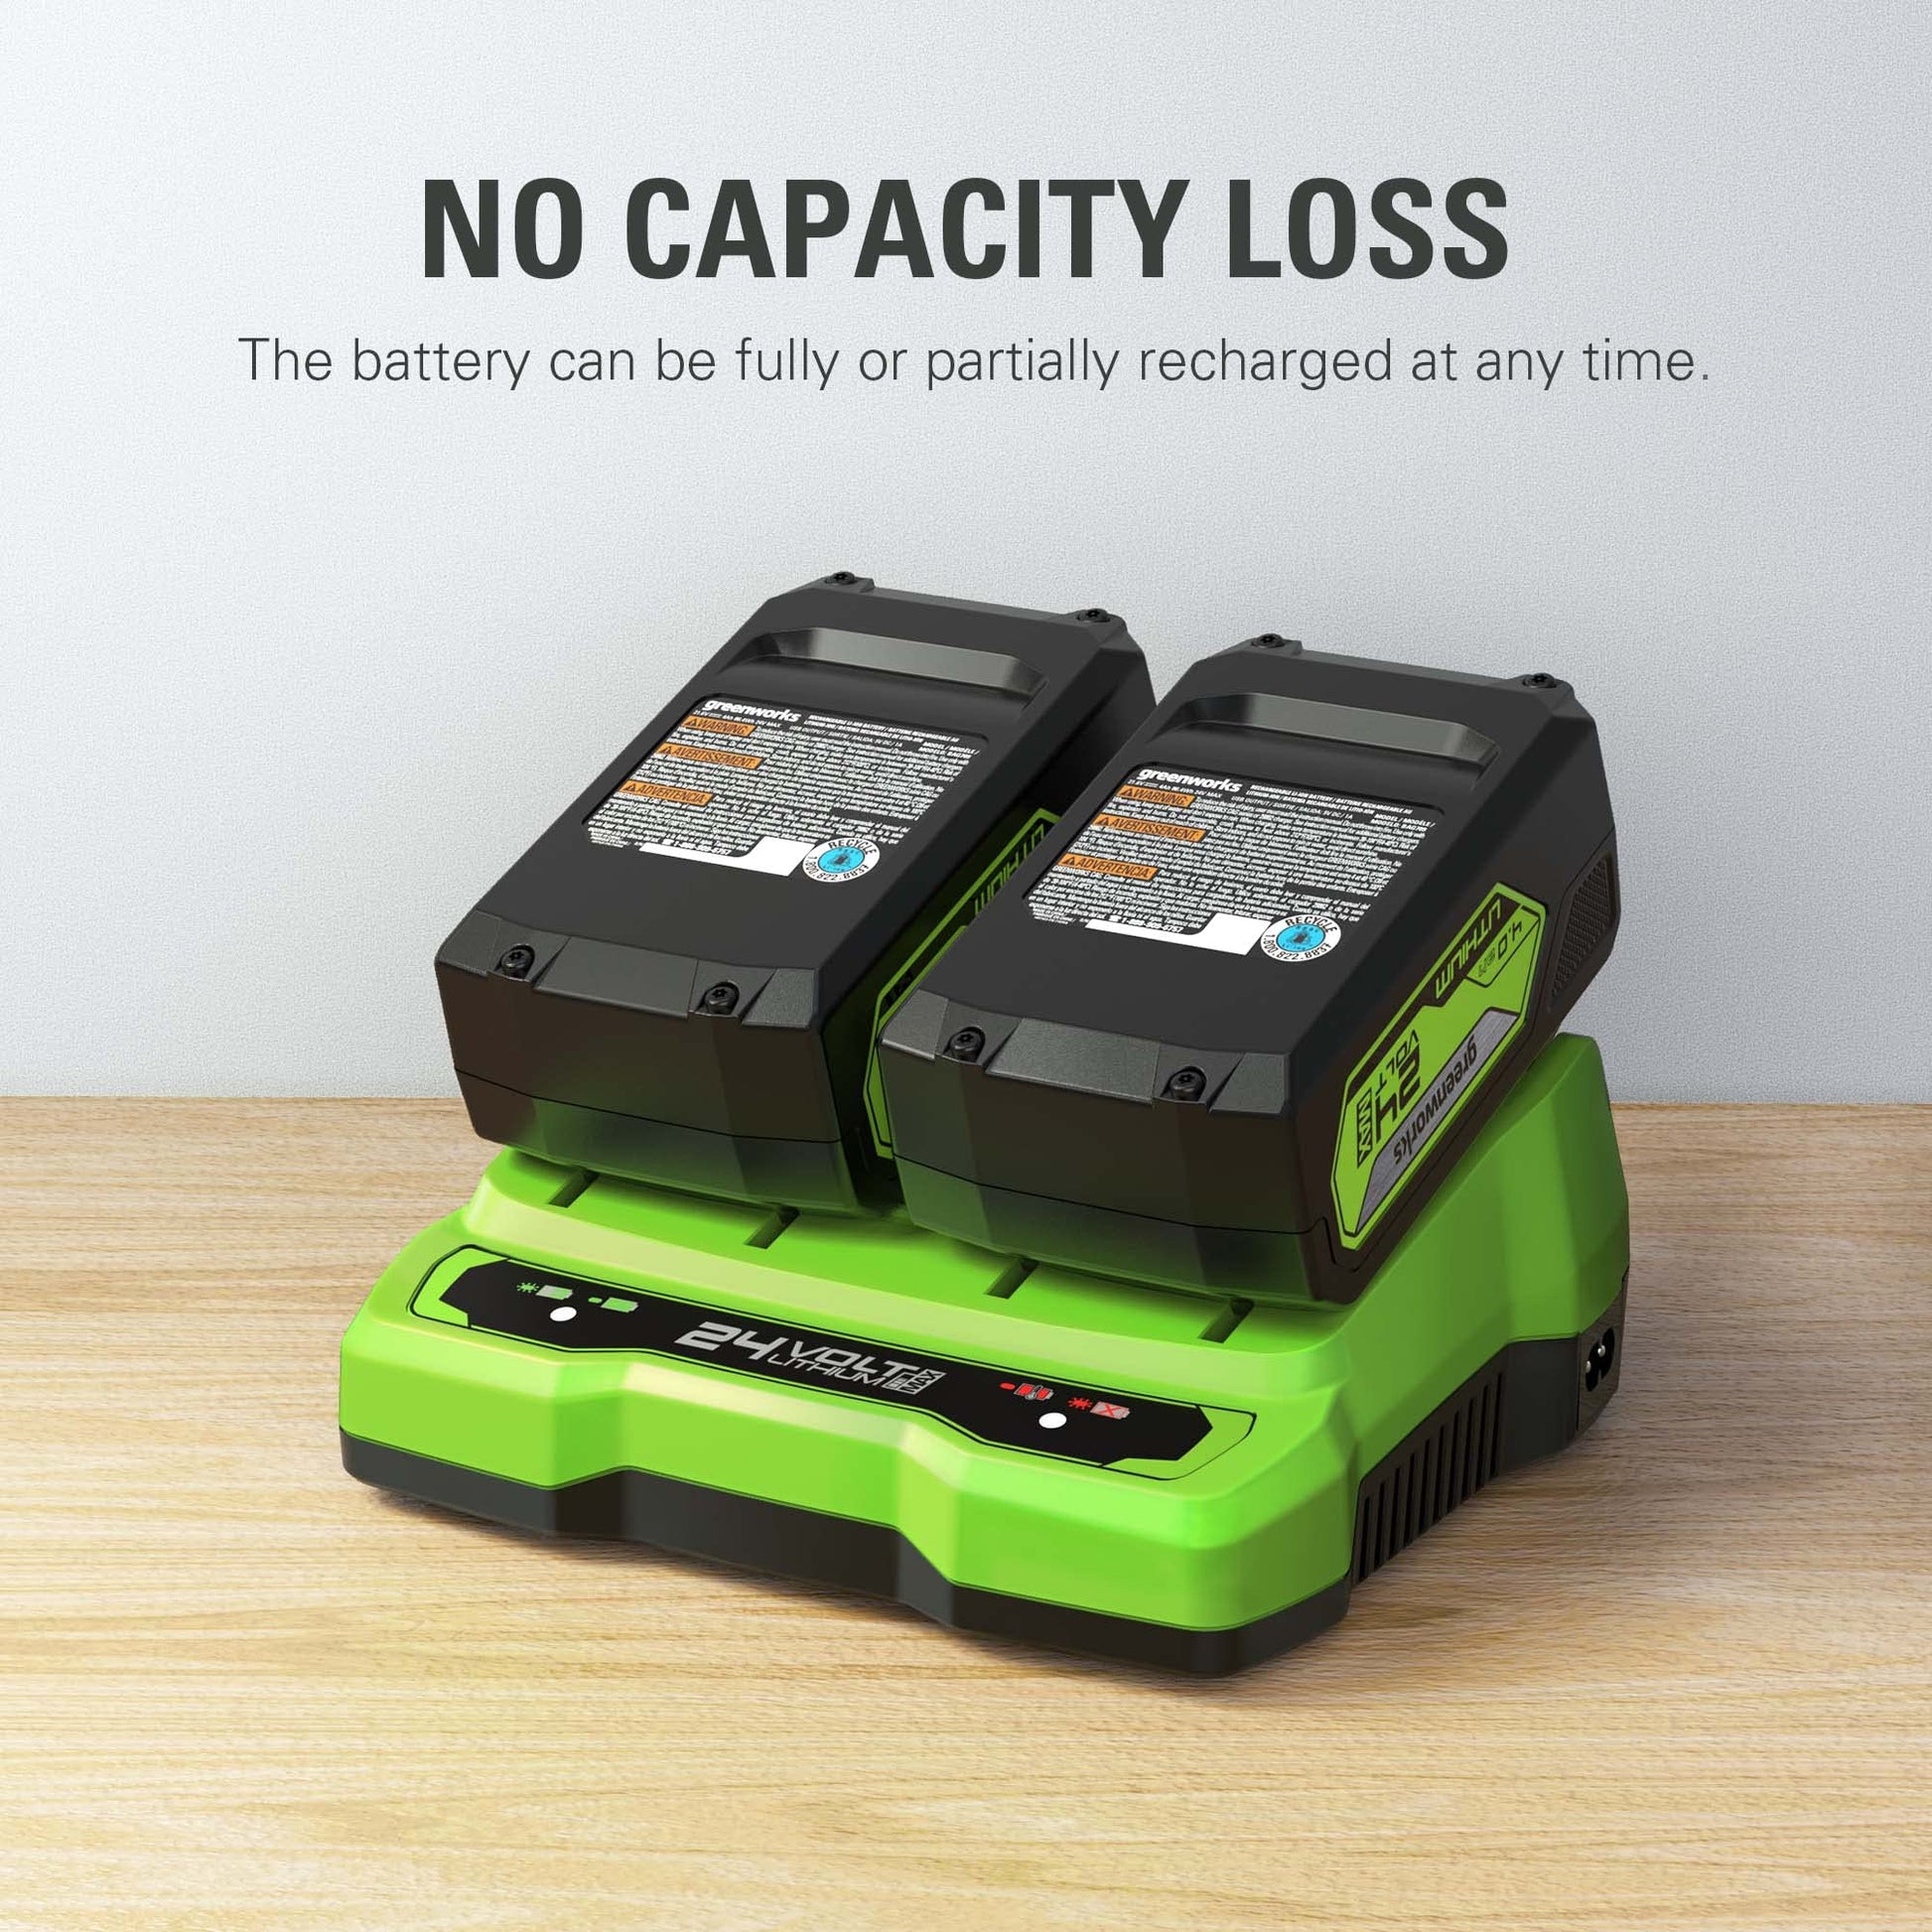 18V 4.0Ah Battery Pack